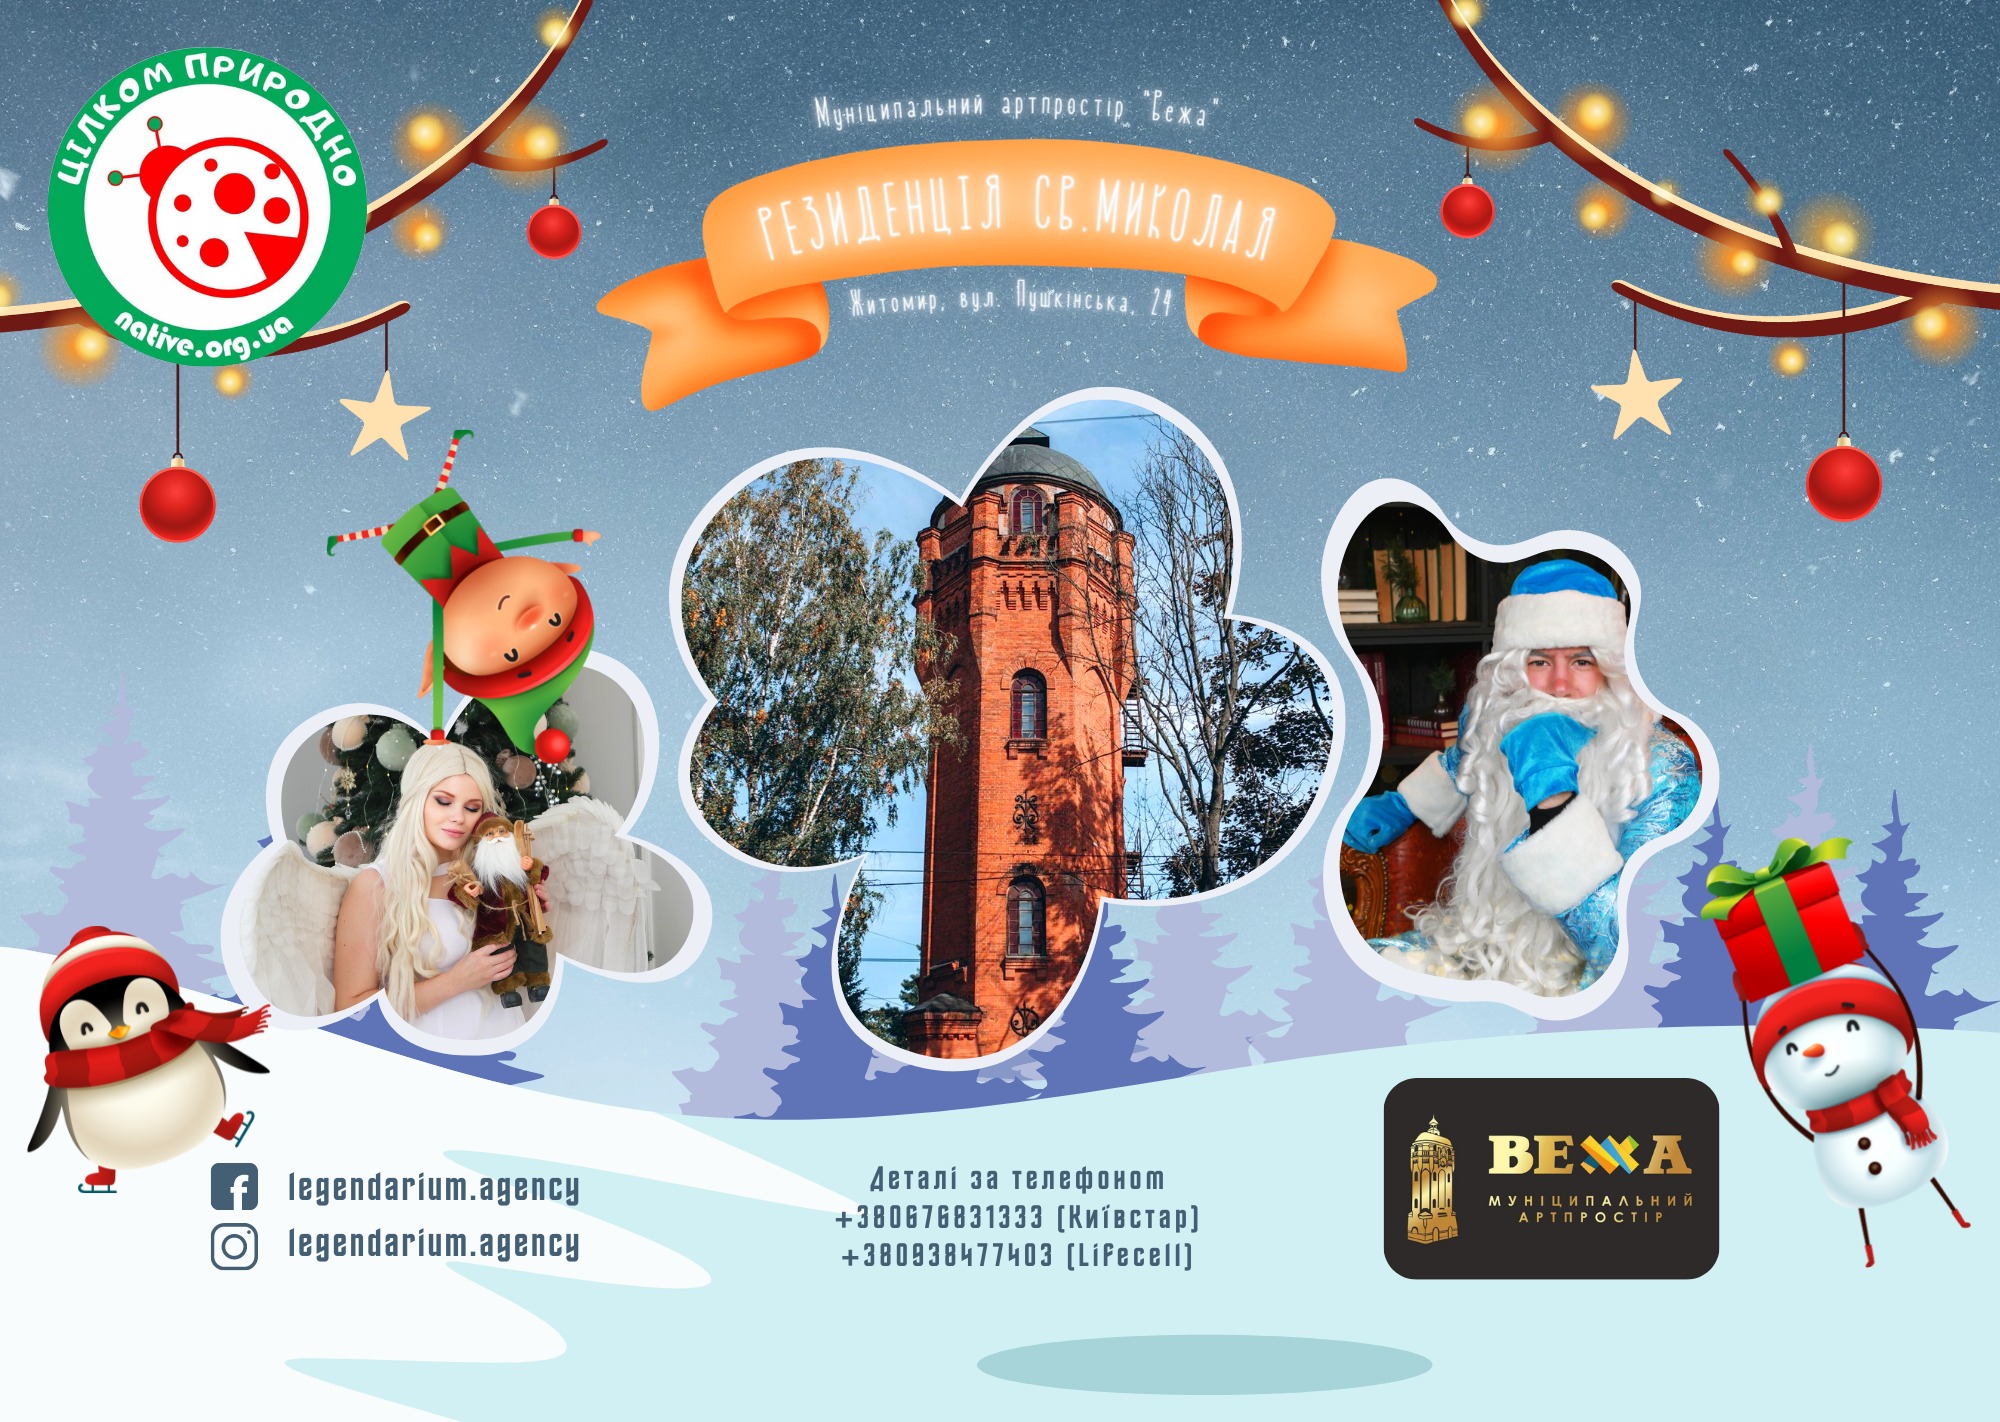 18-19 грудня в Водонапірній вежі працюватиме резиденція Святого Миколая